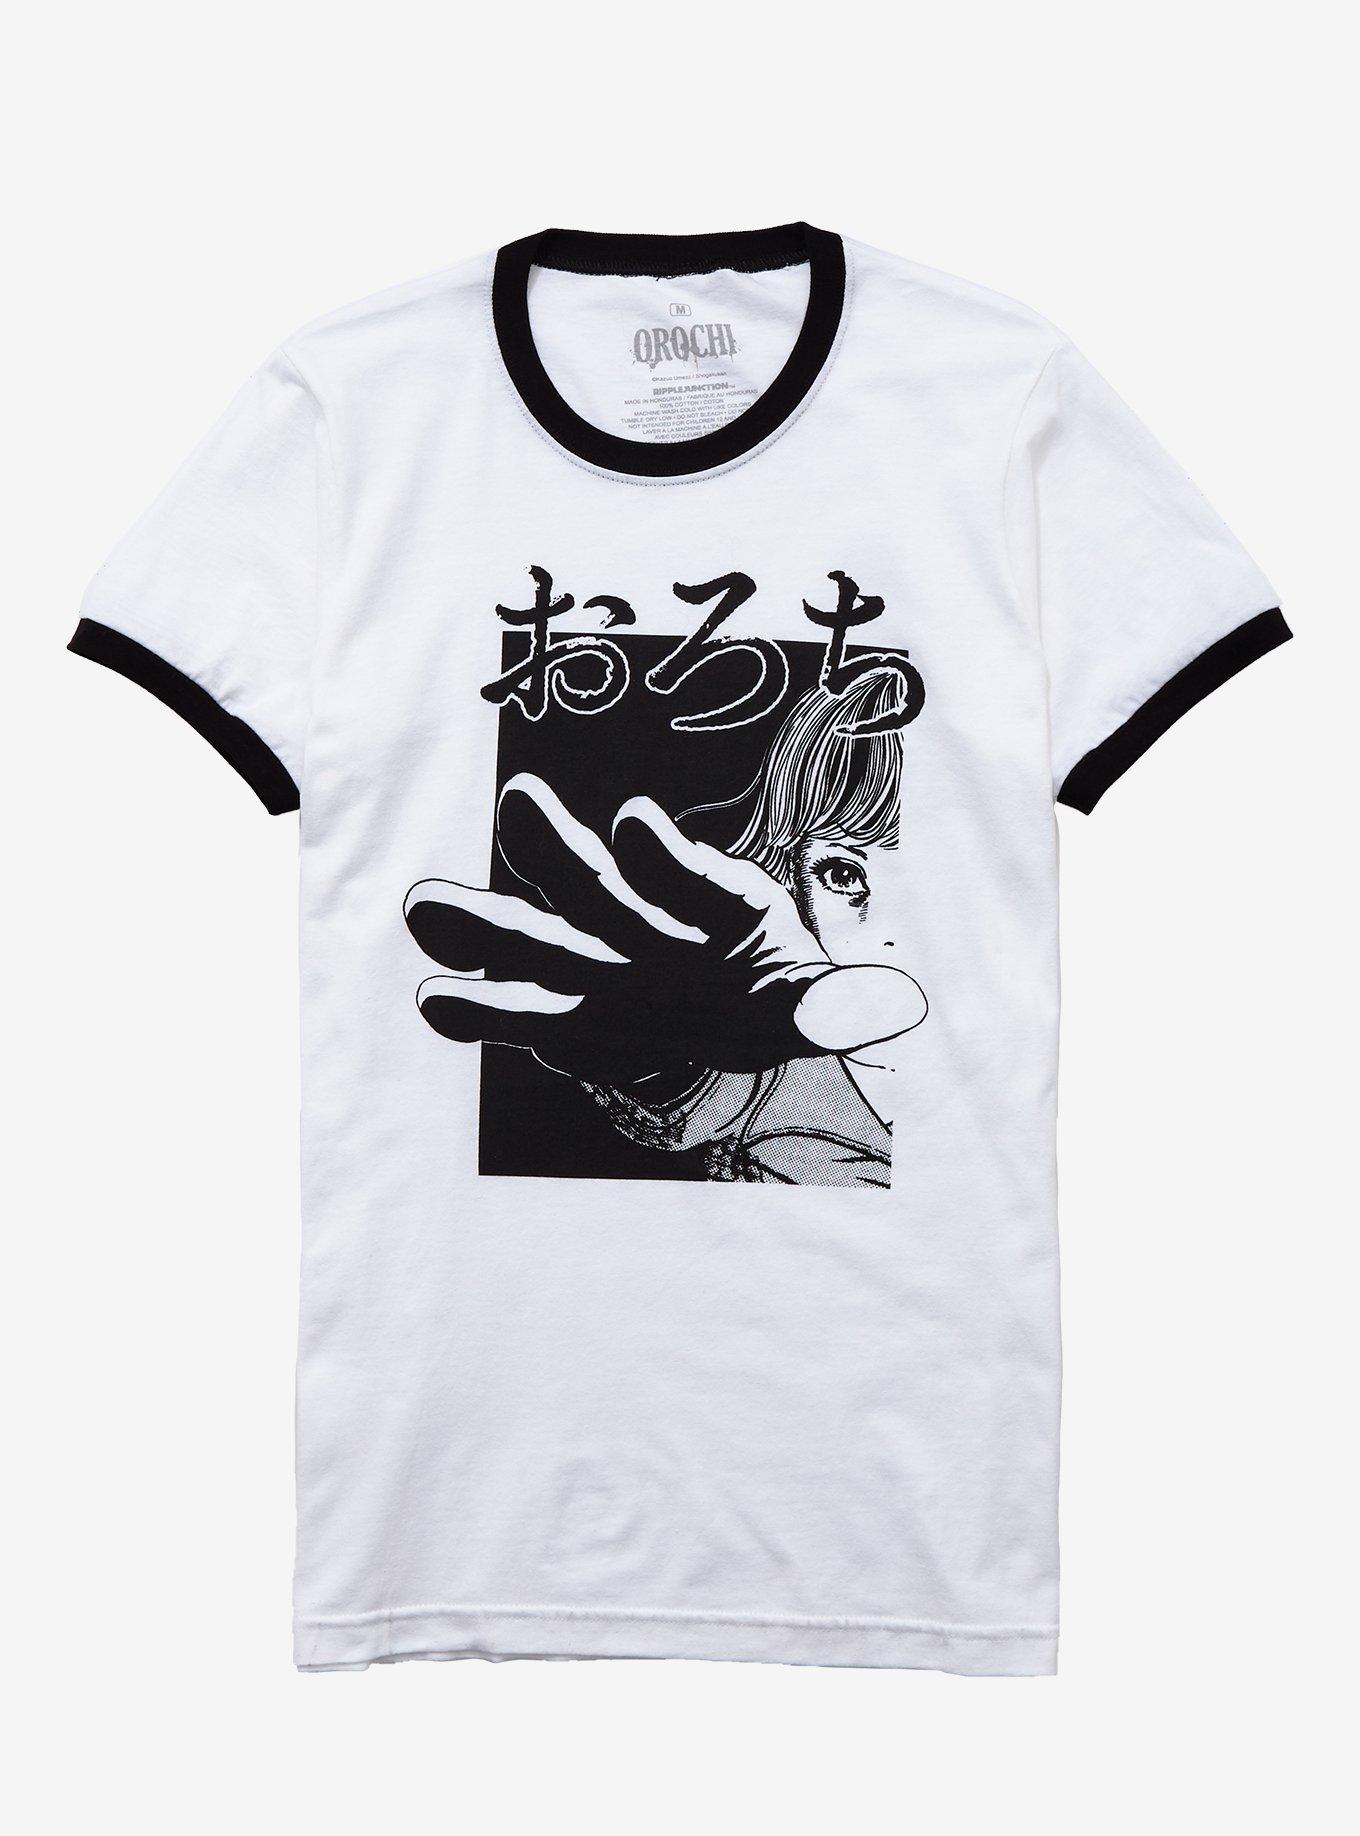 Kazuo Umezu Orochi: Blood Black & White Girls Ringer T-Shirt | Hot Topic